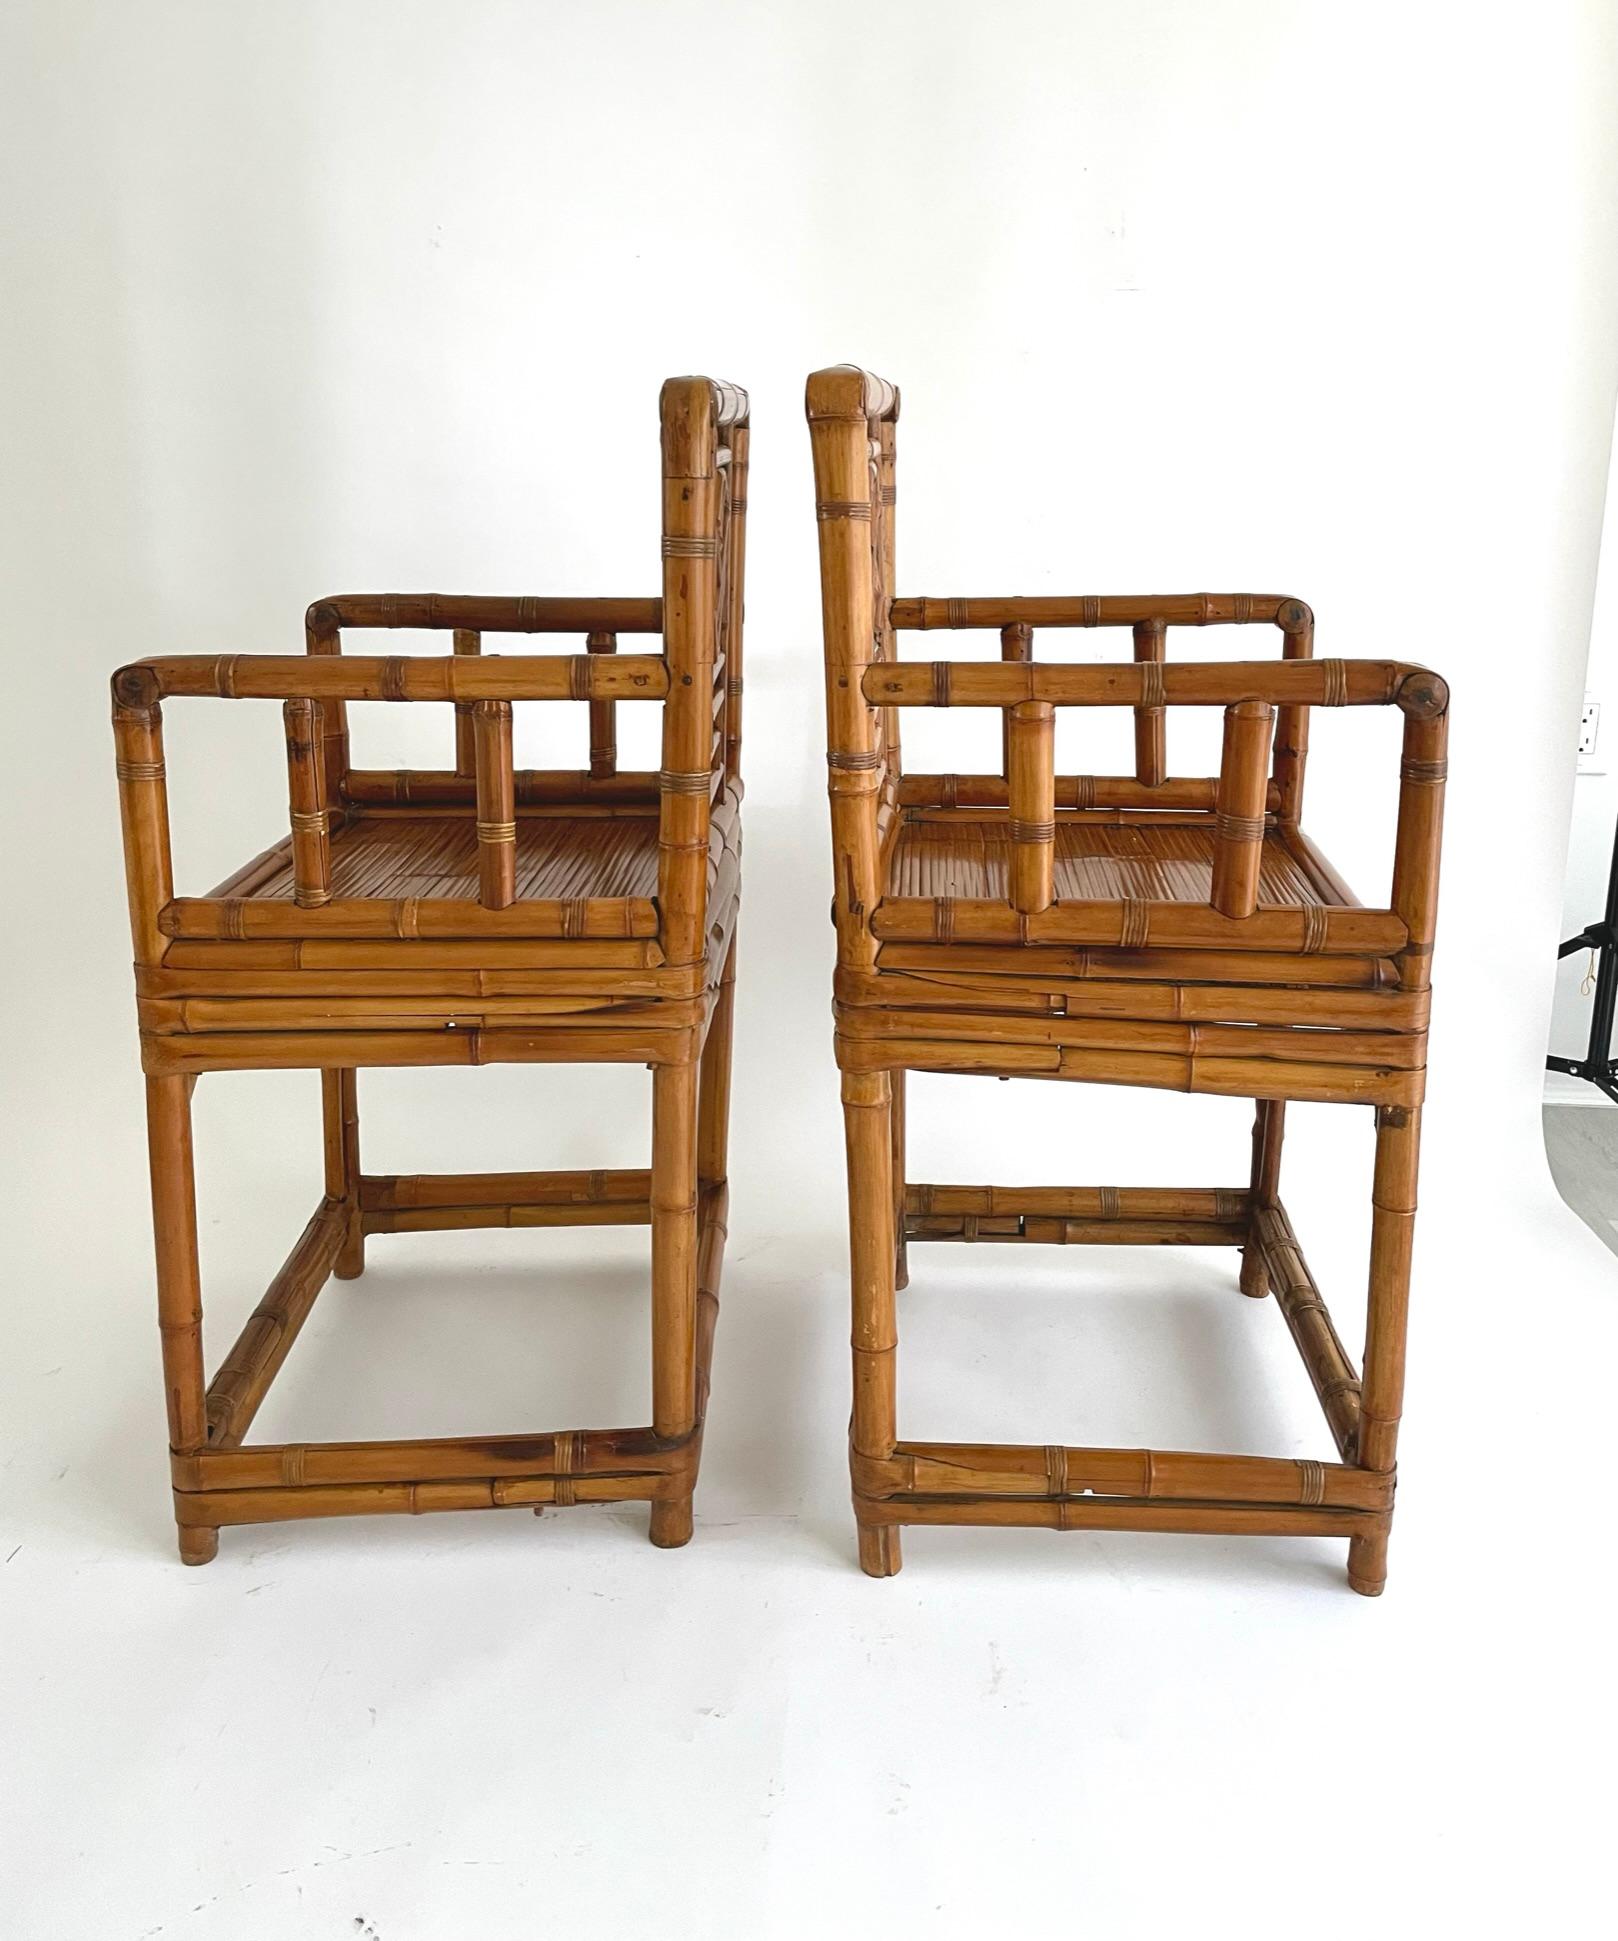 Paire de beaux fauteuils en bambou du début du 20e siècle avec un motif de style treillis. 

Les vieux meubles en bambou sont beaucoup plus rares que les meubles en bois, car peu ont survécu. La menuiserie des meubles en bambou peut être très